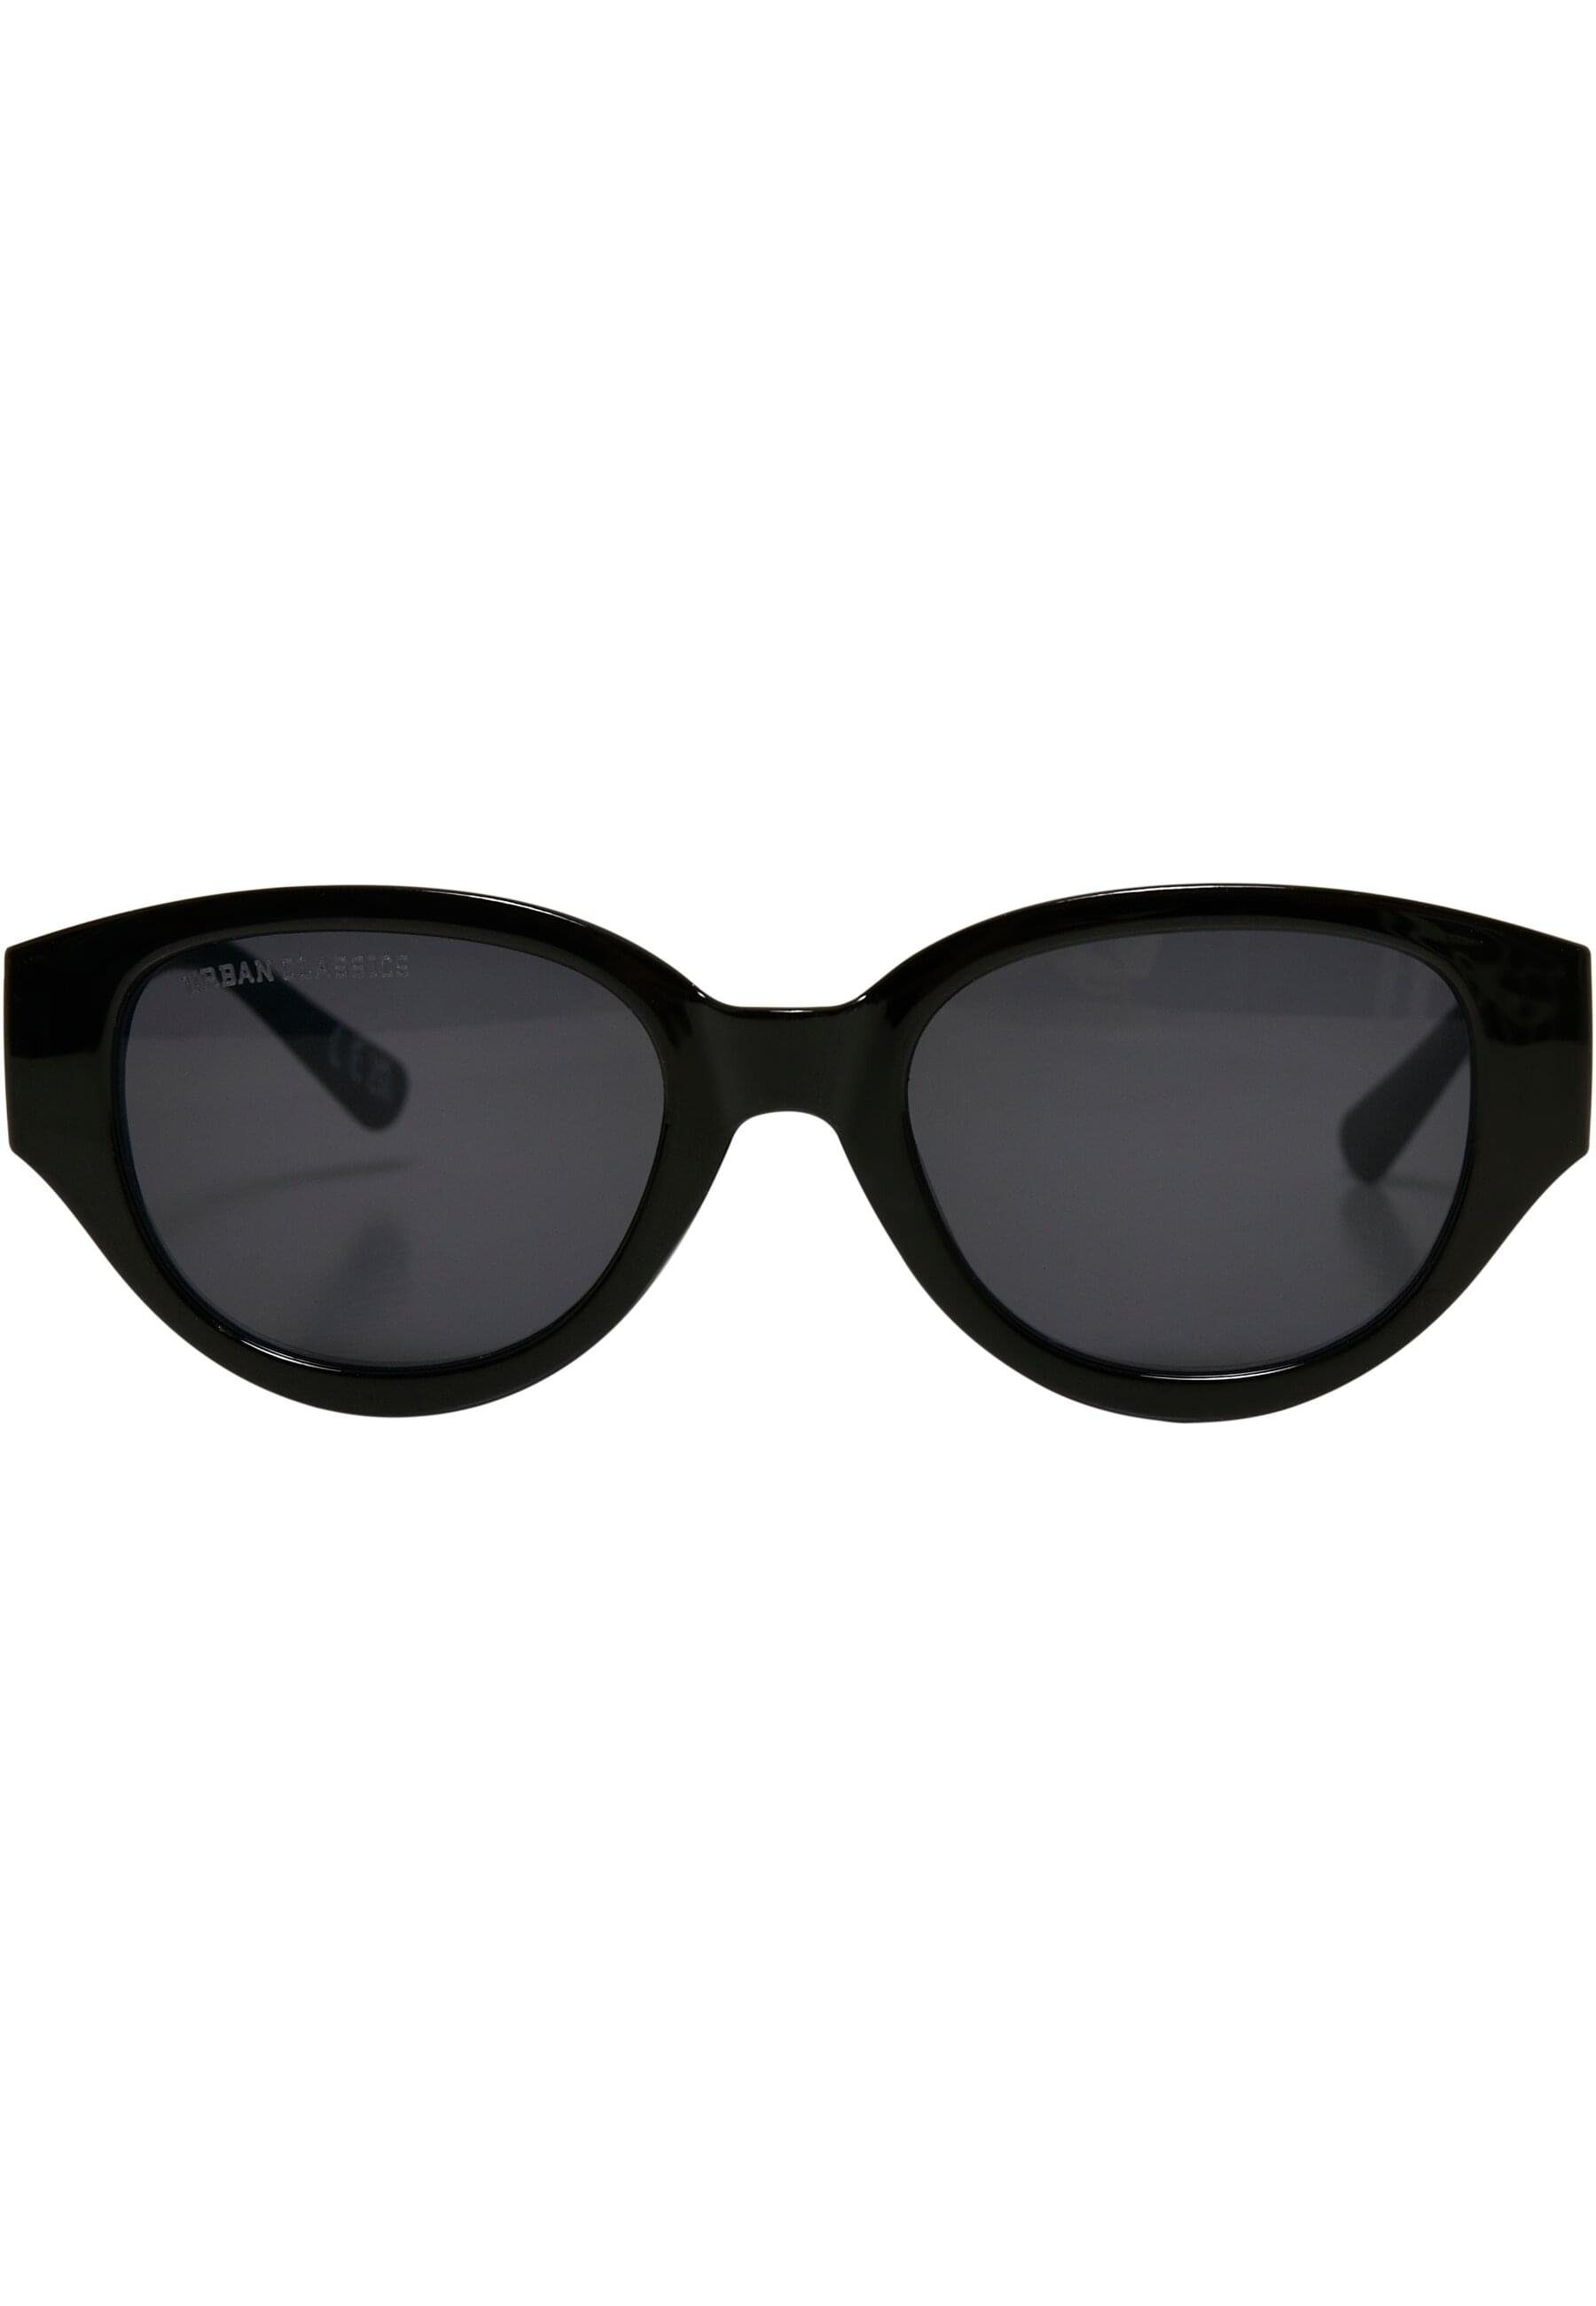 Sunglasses Cruz URBAN Unisex CLASSICS black Santa Sonnenbrille